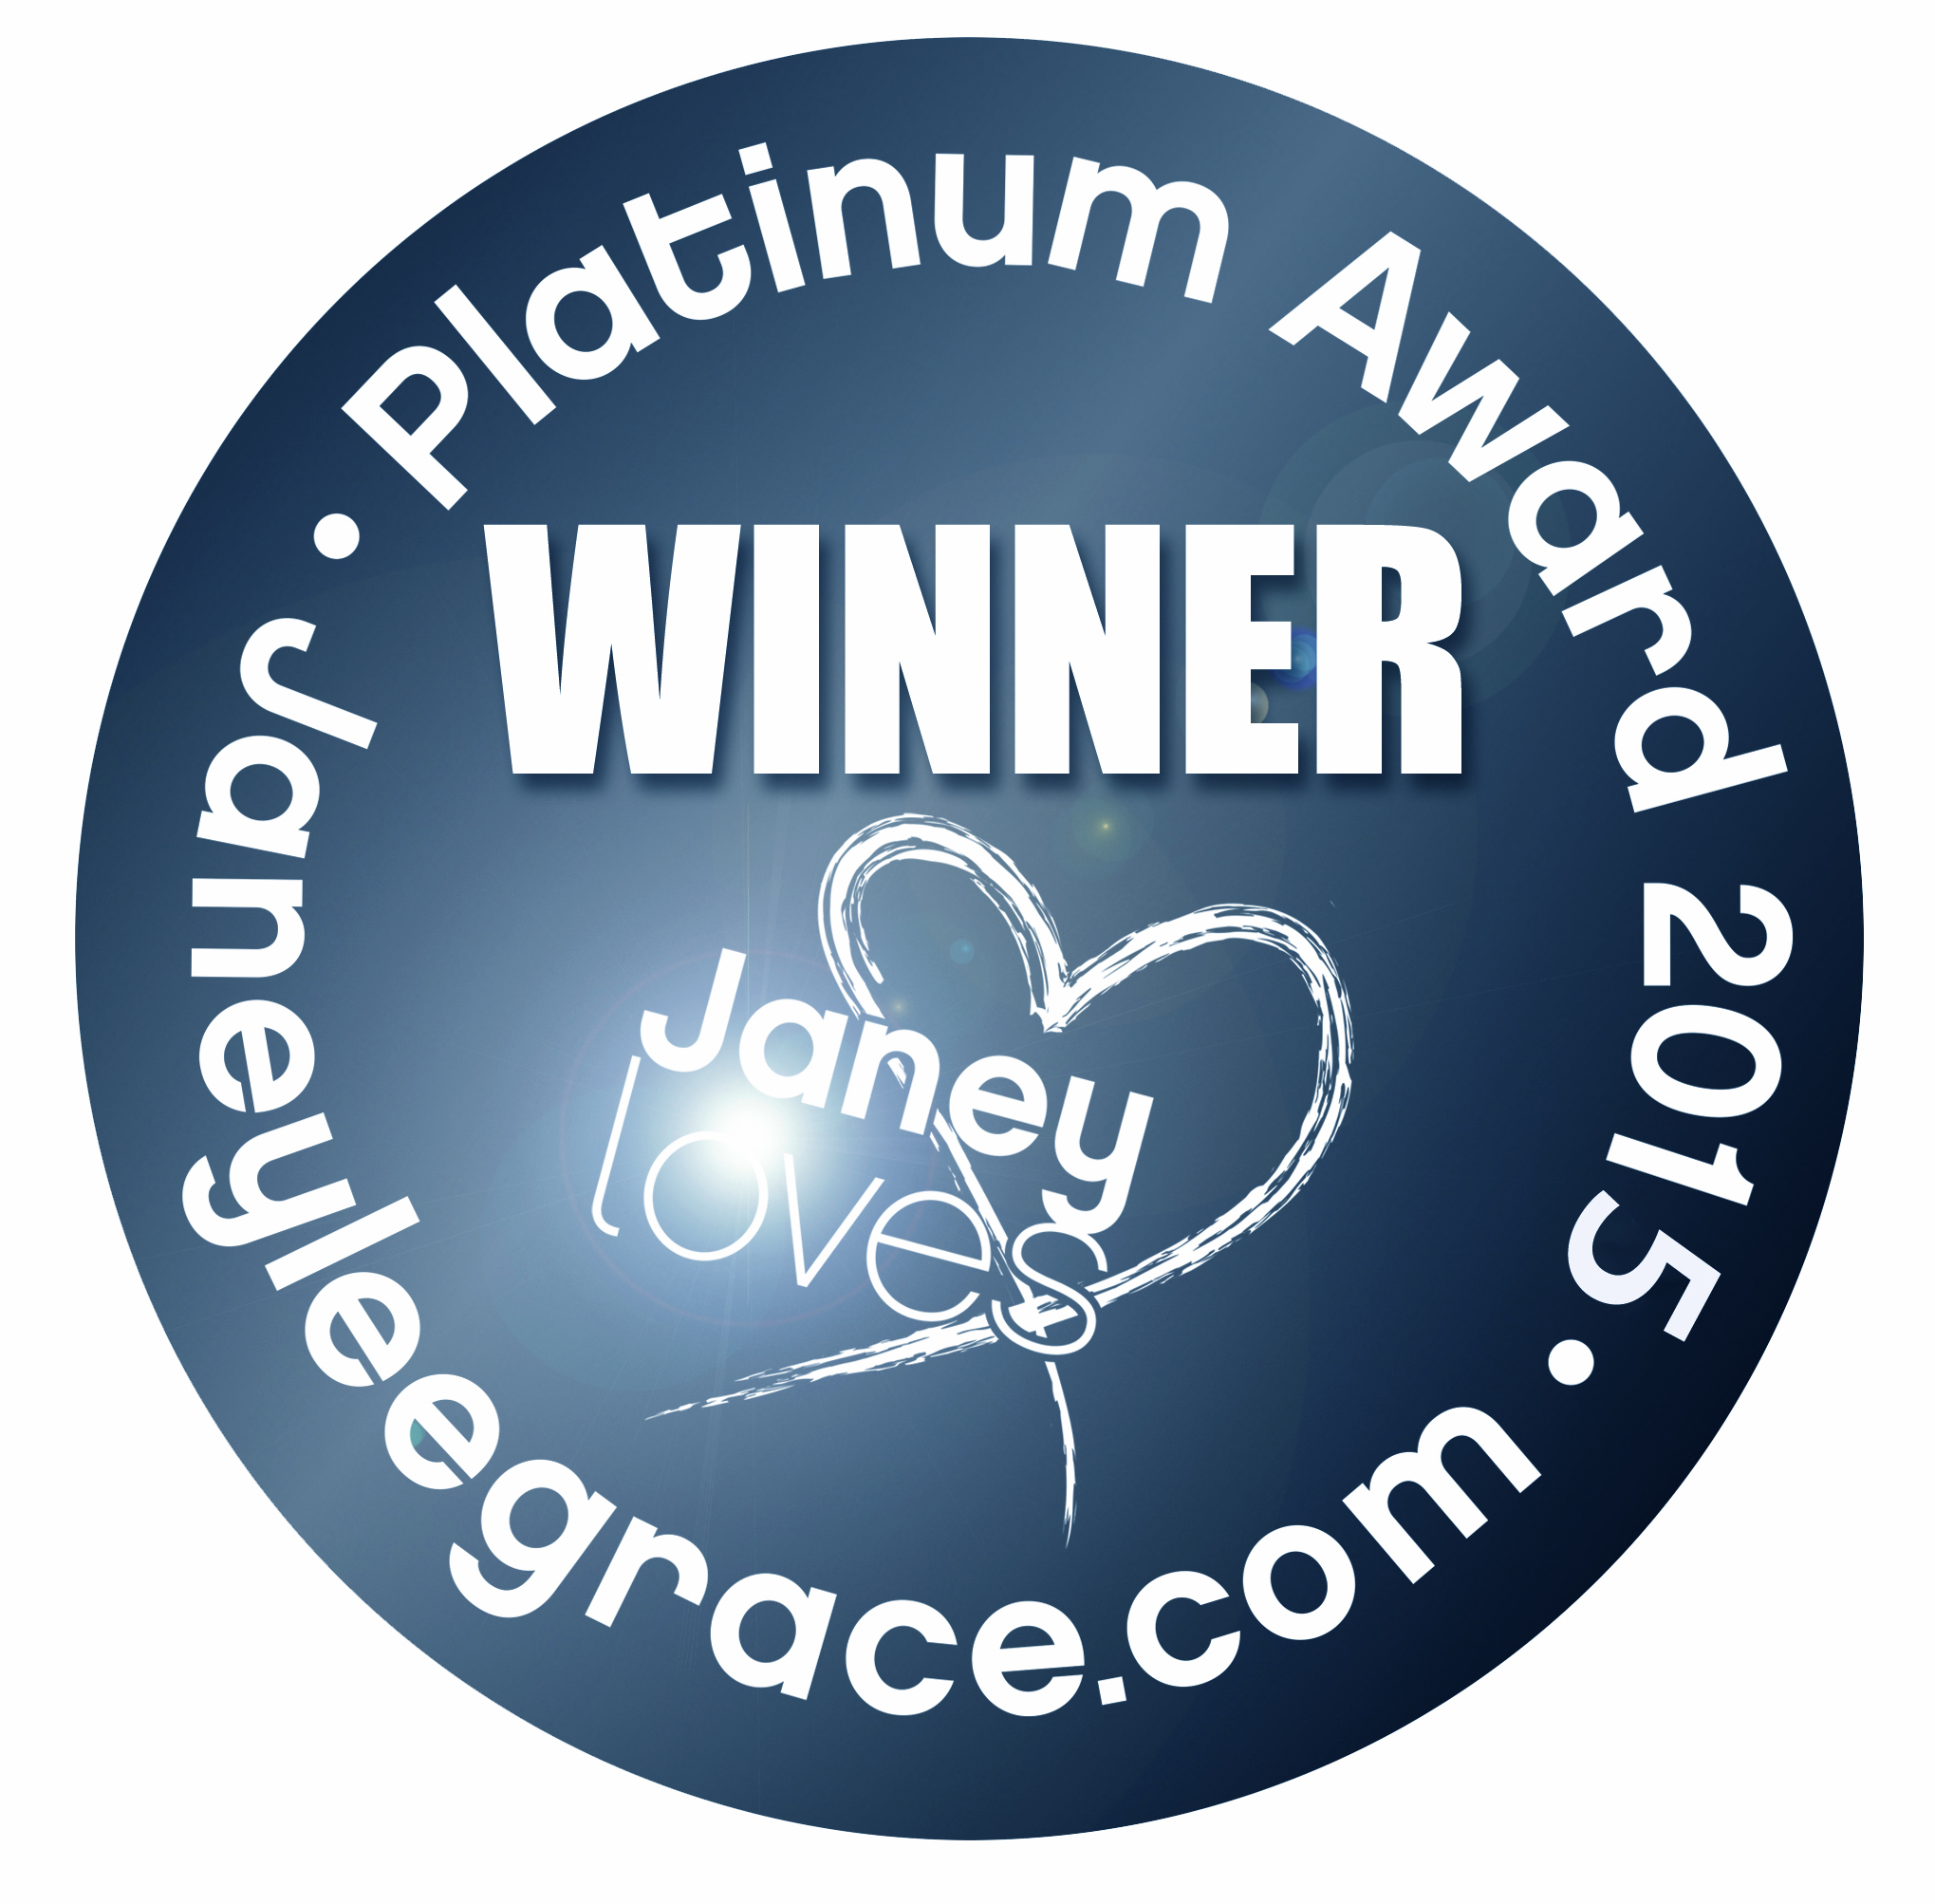 Green 8 Body Premium  Harmonizer - WINNER of Janey Loves 2015 Platinum Awards